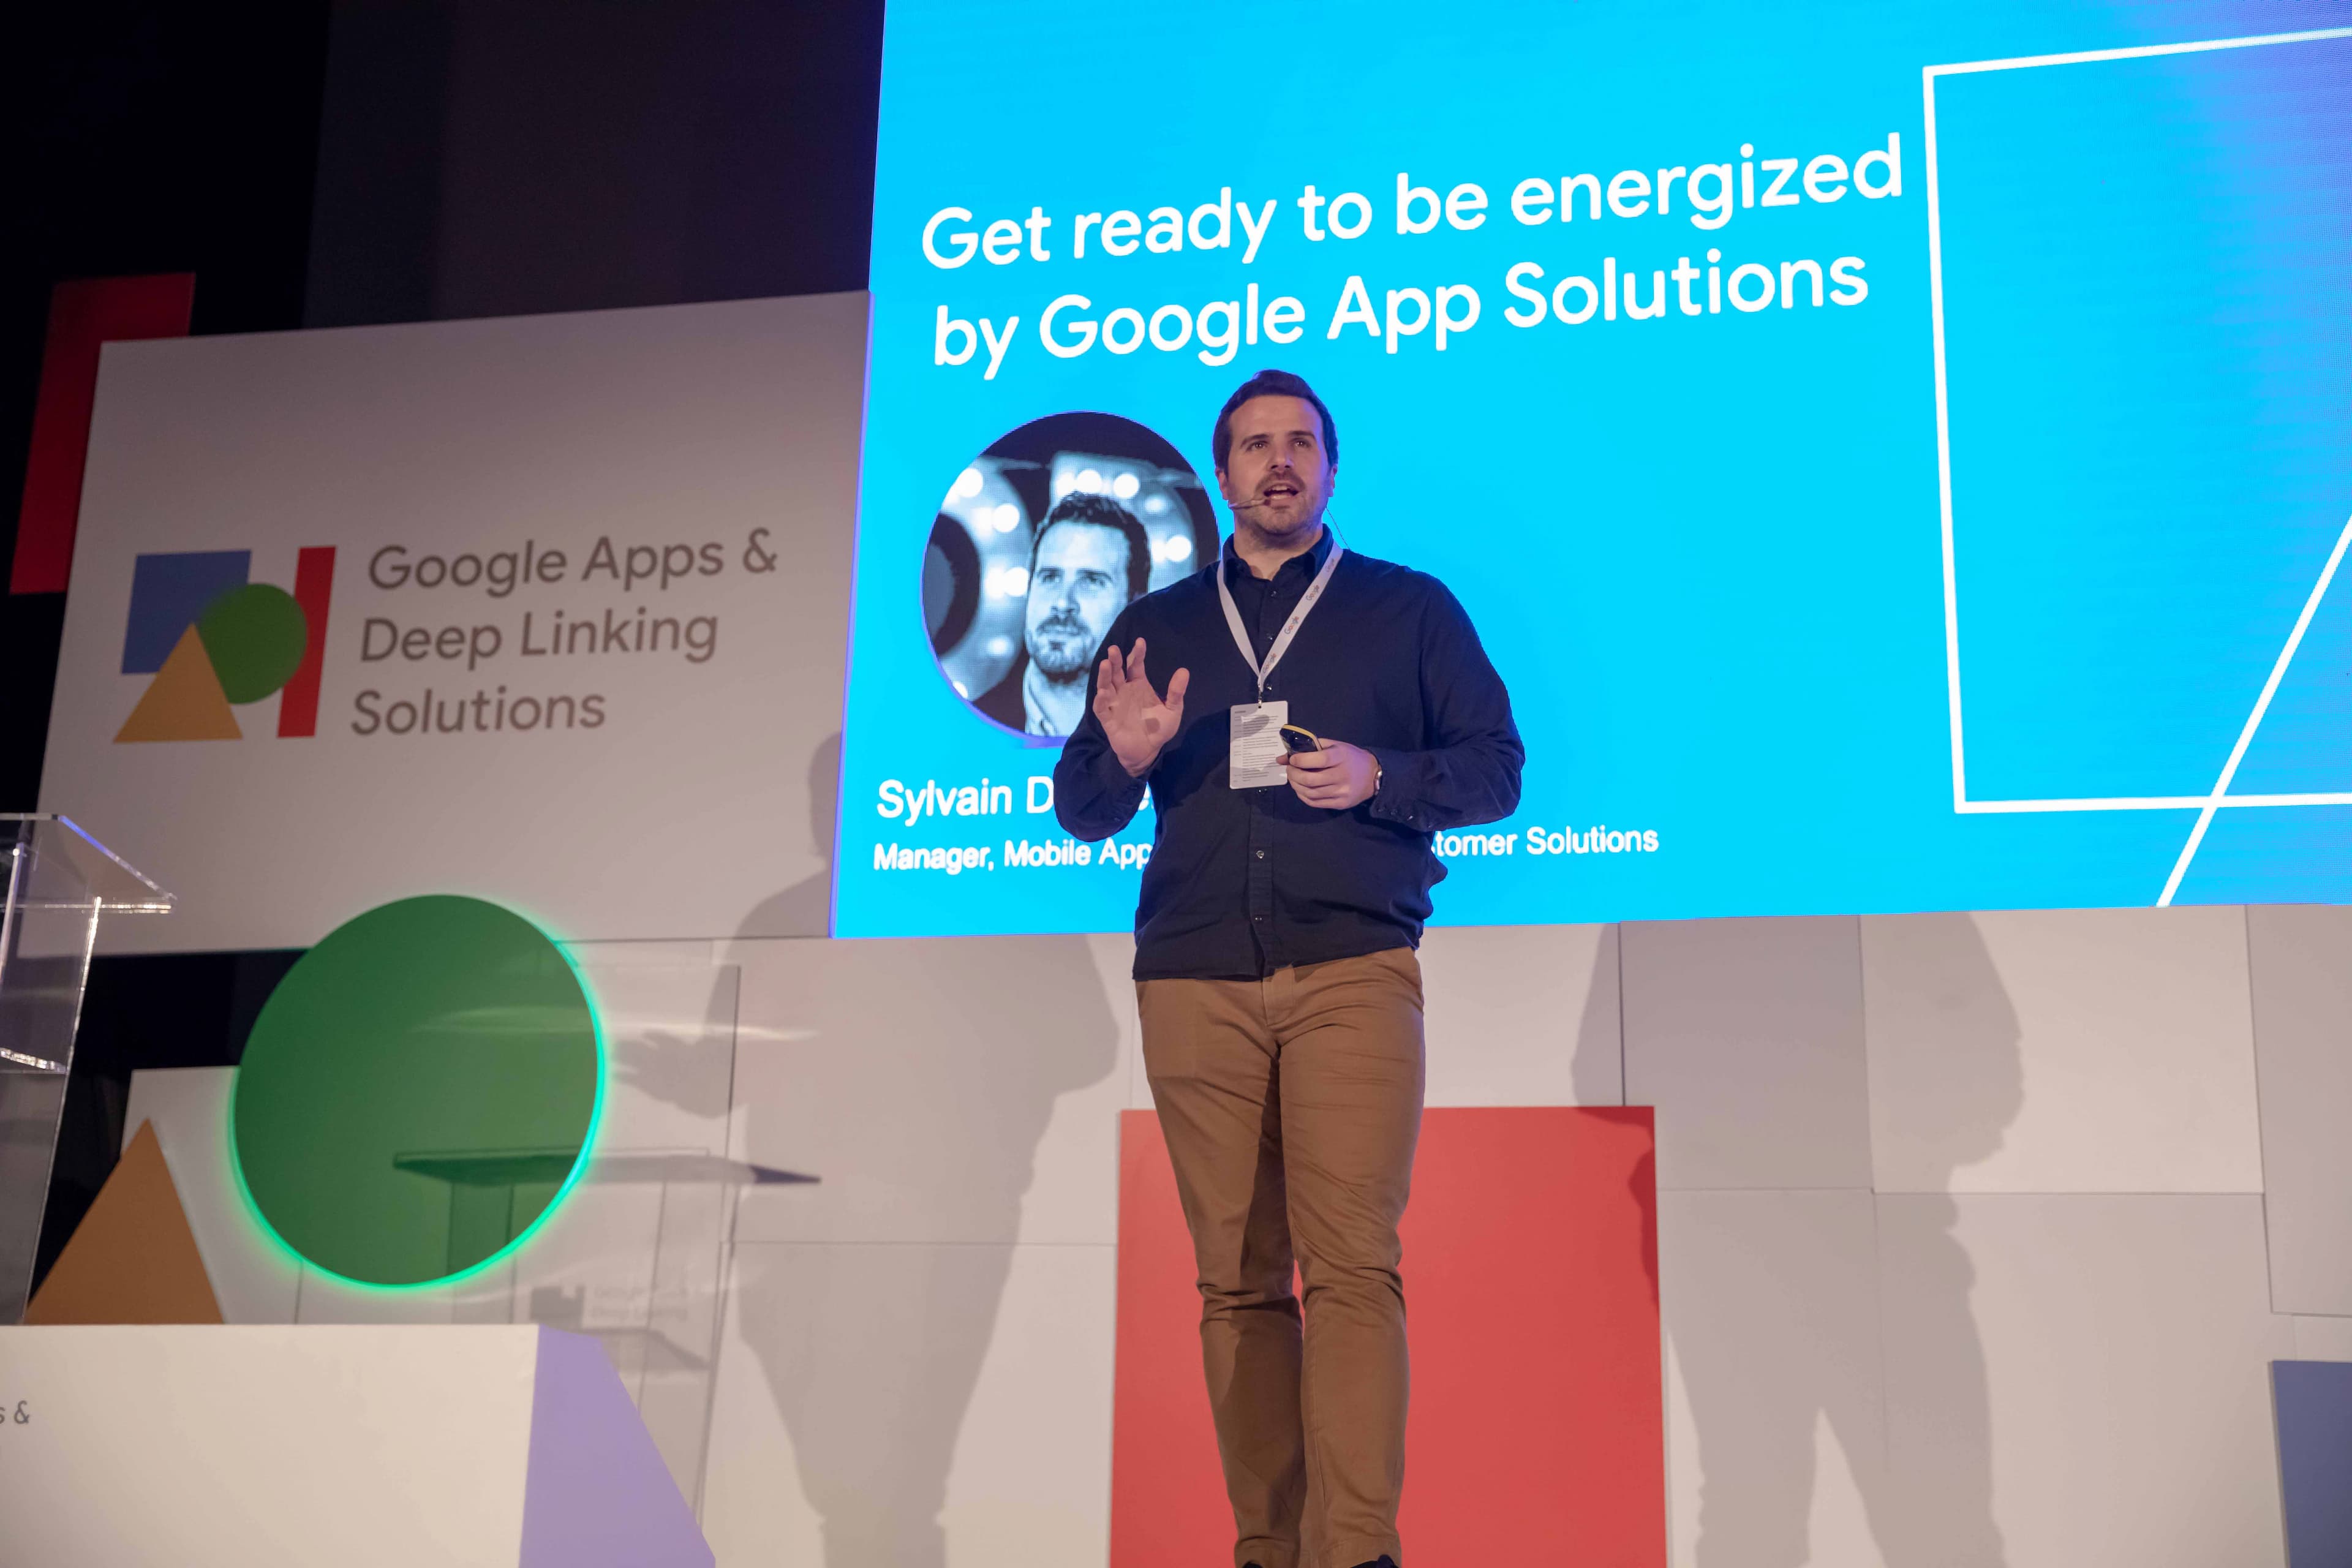 Google App & Deep Linking Solutions - 1